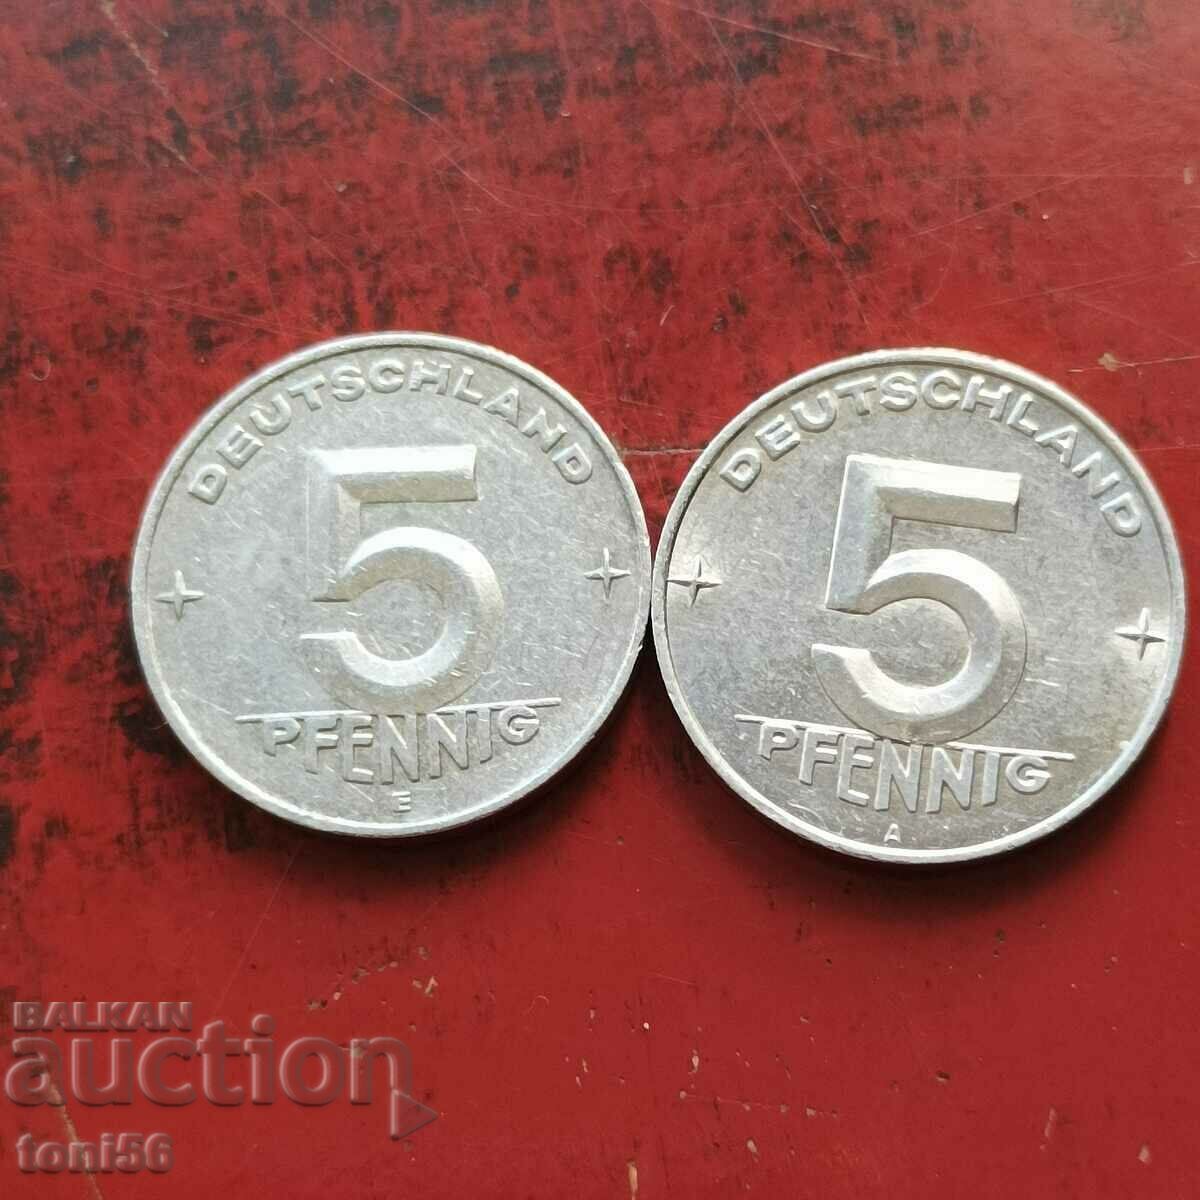 GDR 2 x 5 pfennig 1953A and E - quality